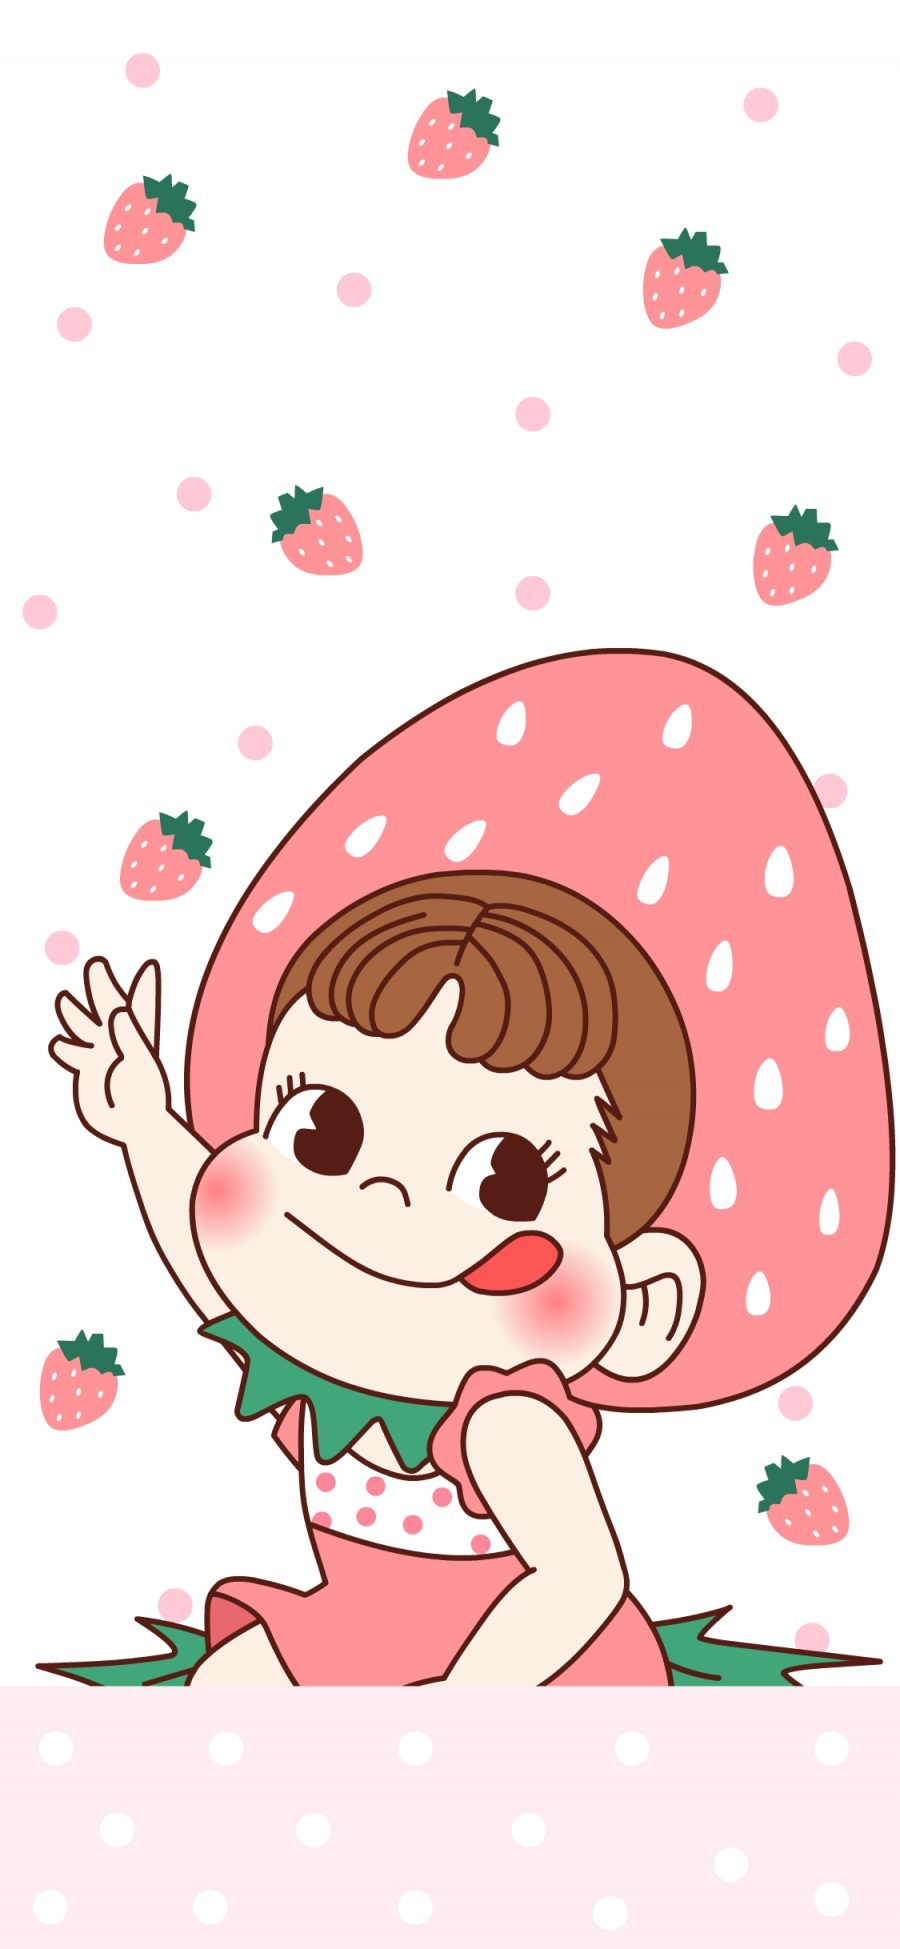 [2436×1125]不二家 糖果 草莓 甜妞 卡通 苹果手机动漫壁纸图片